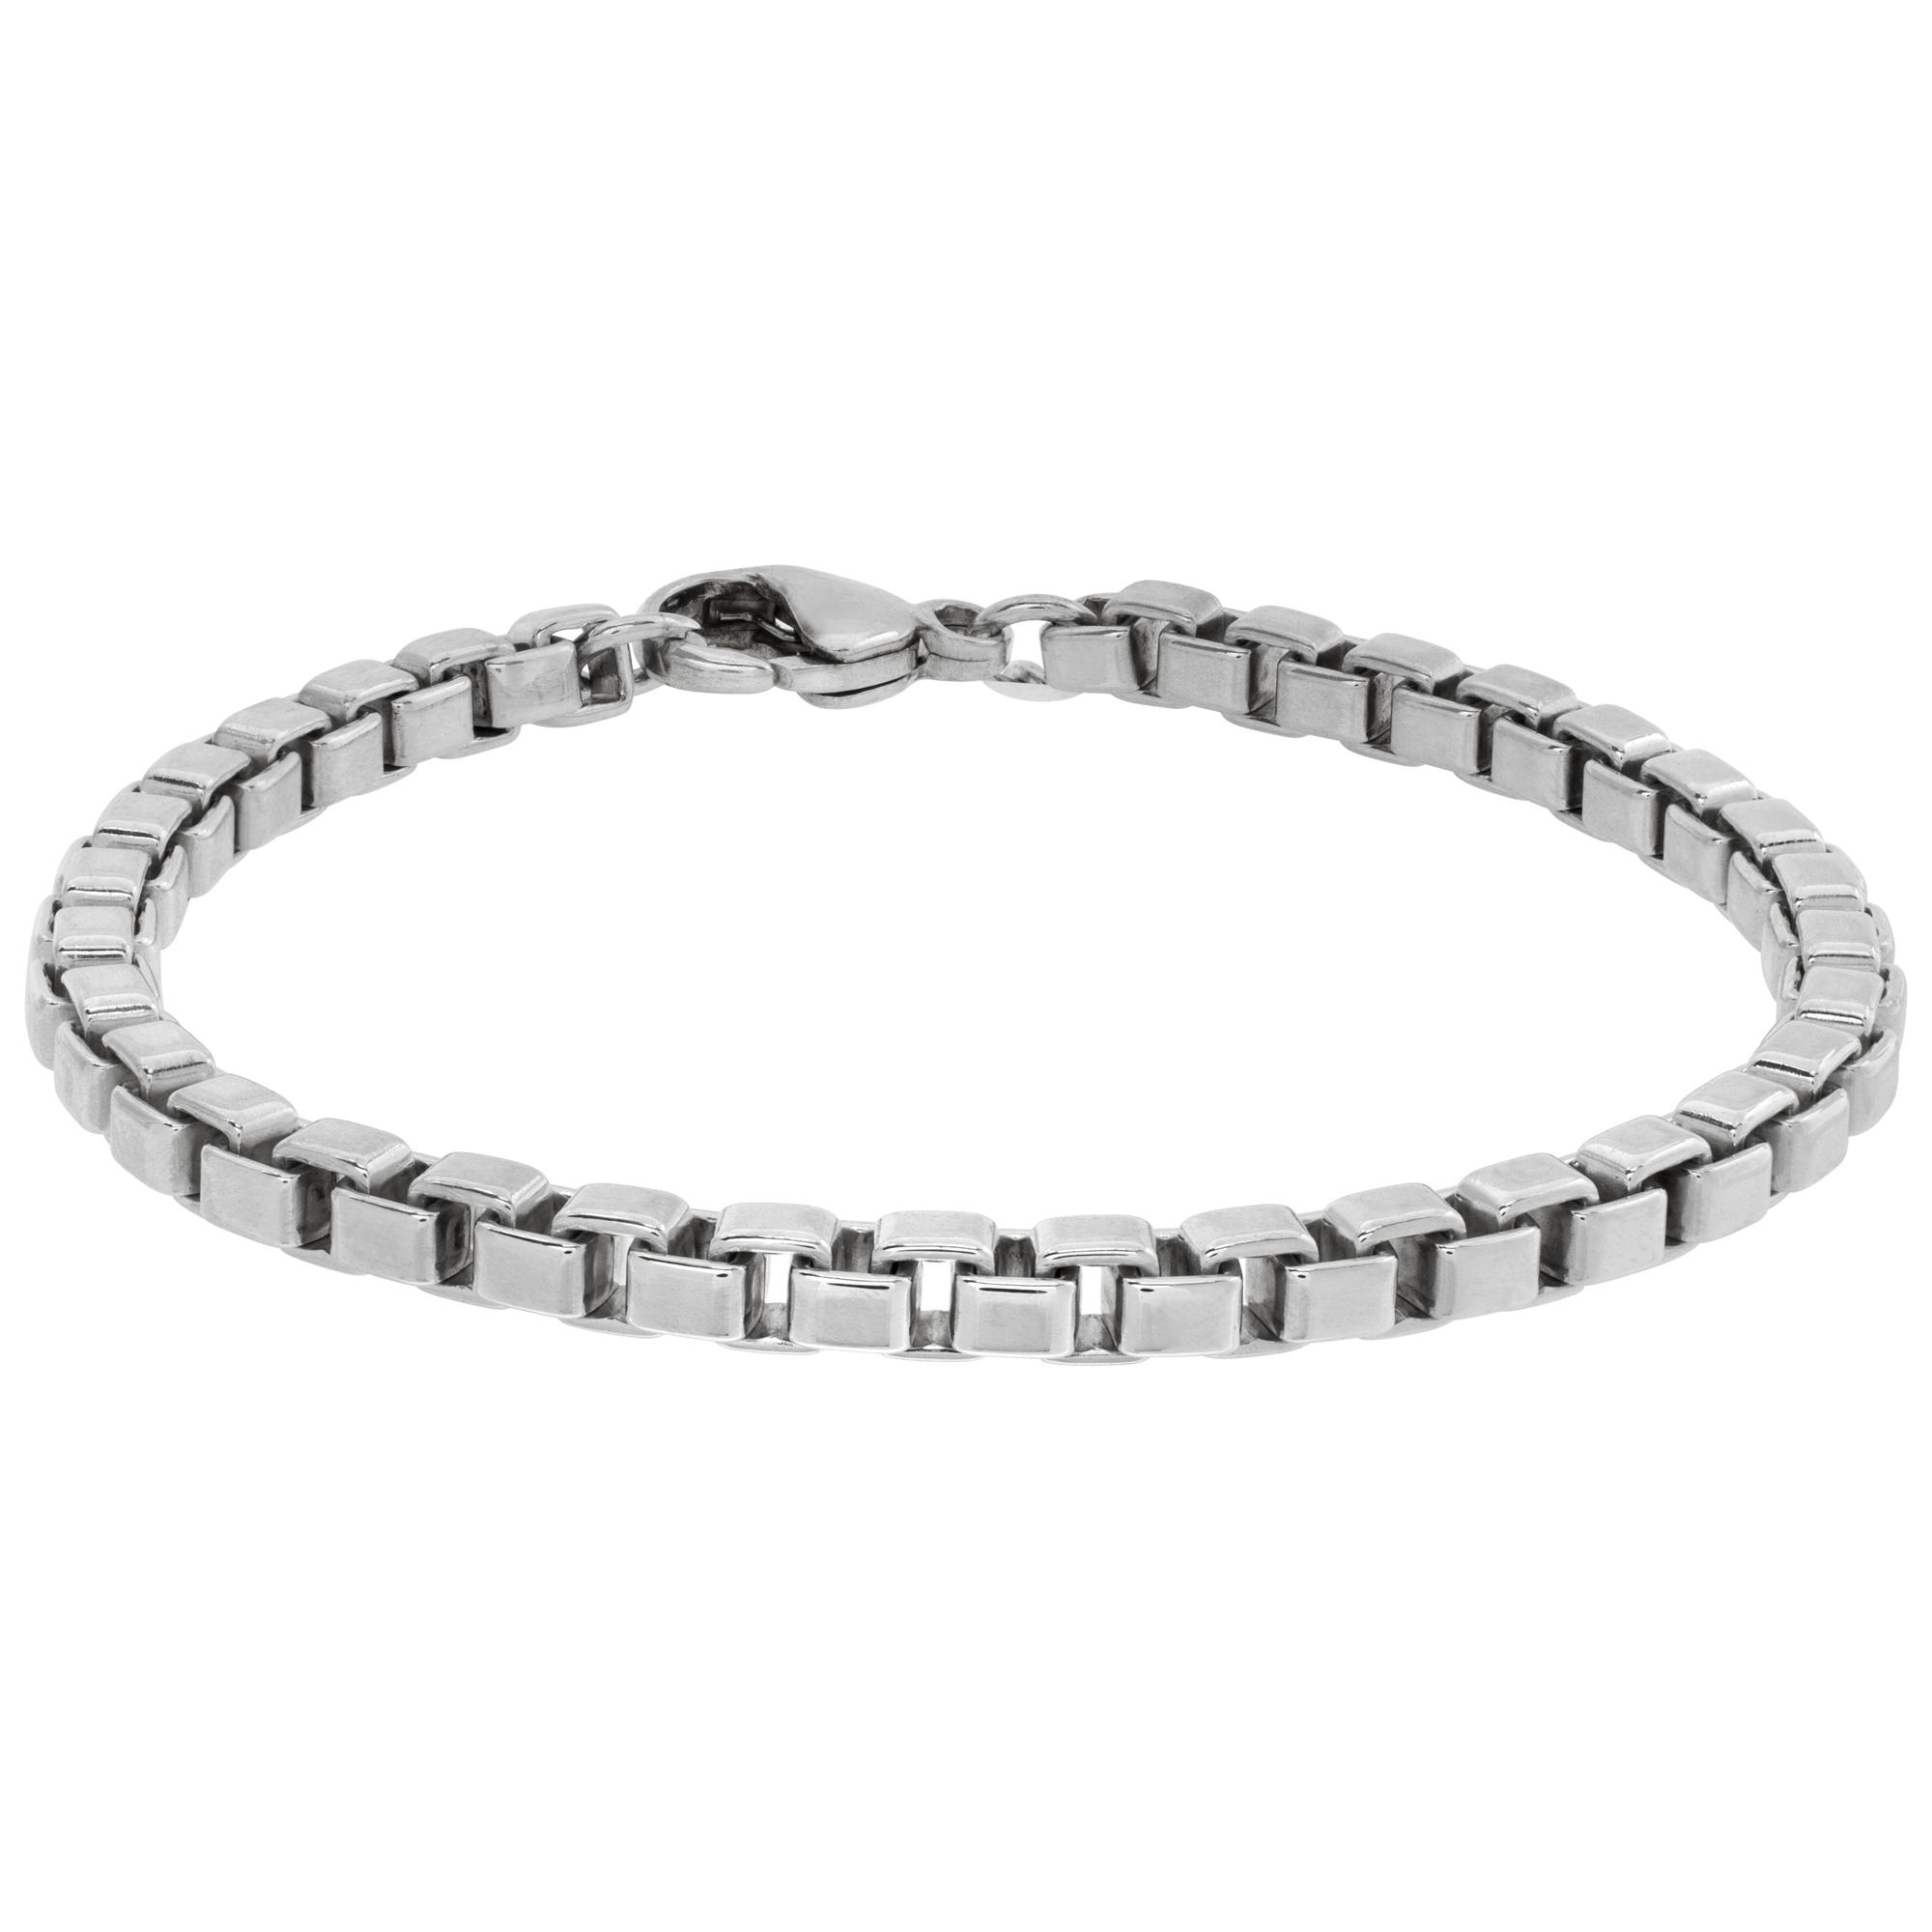 Tiffany & Co. Venetian Chain Link sterling silver bracelet